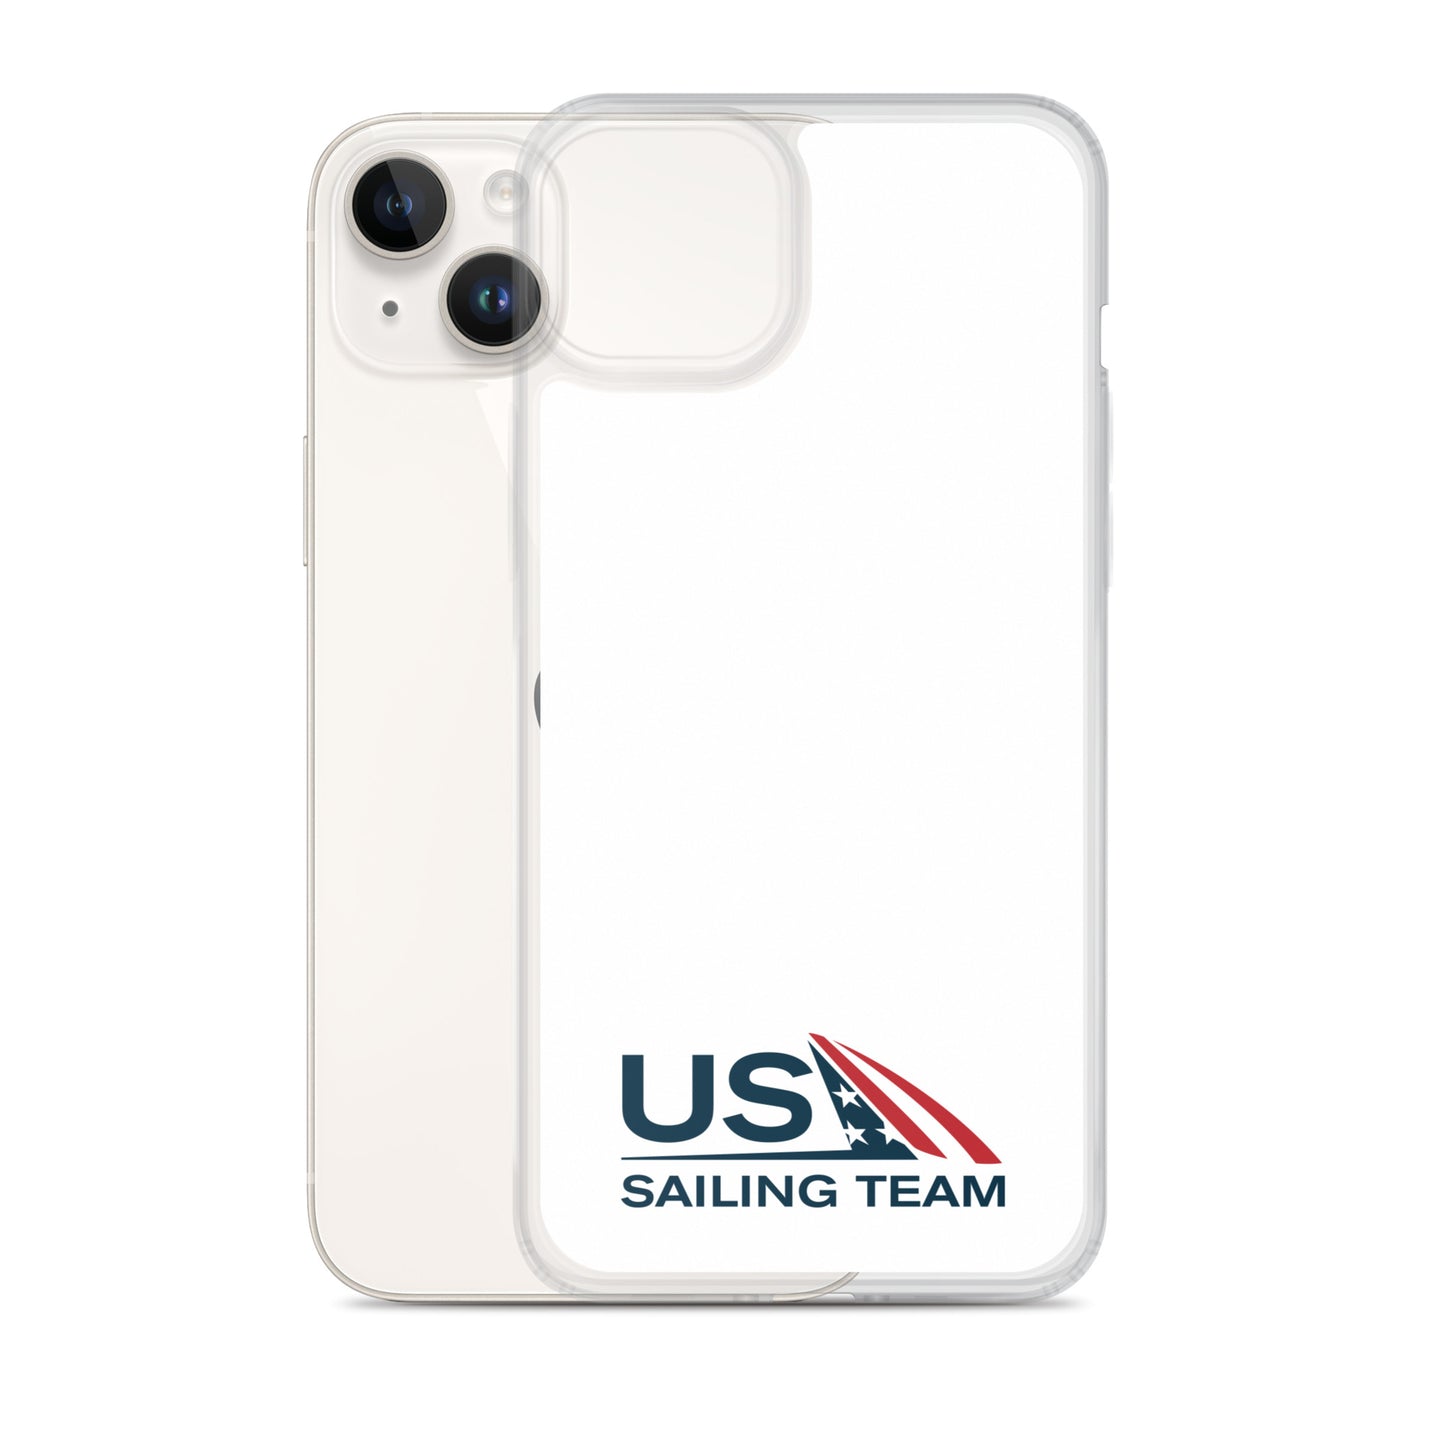 iPhone Case (US Sailing Team)